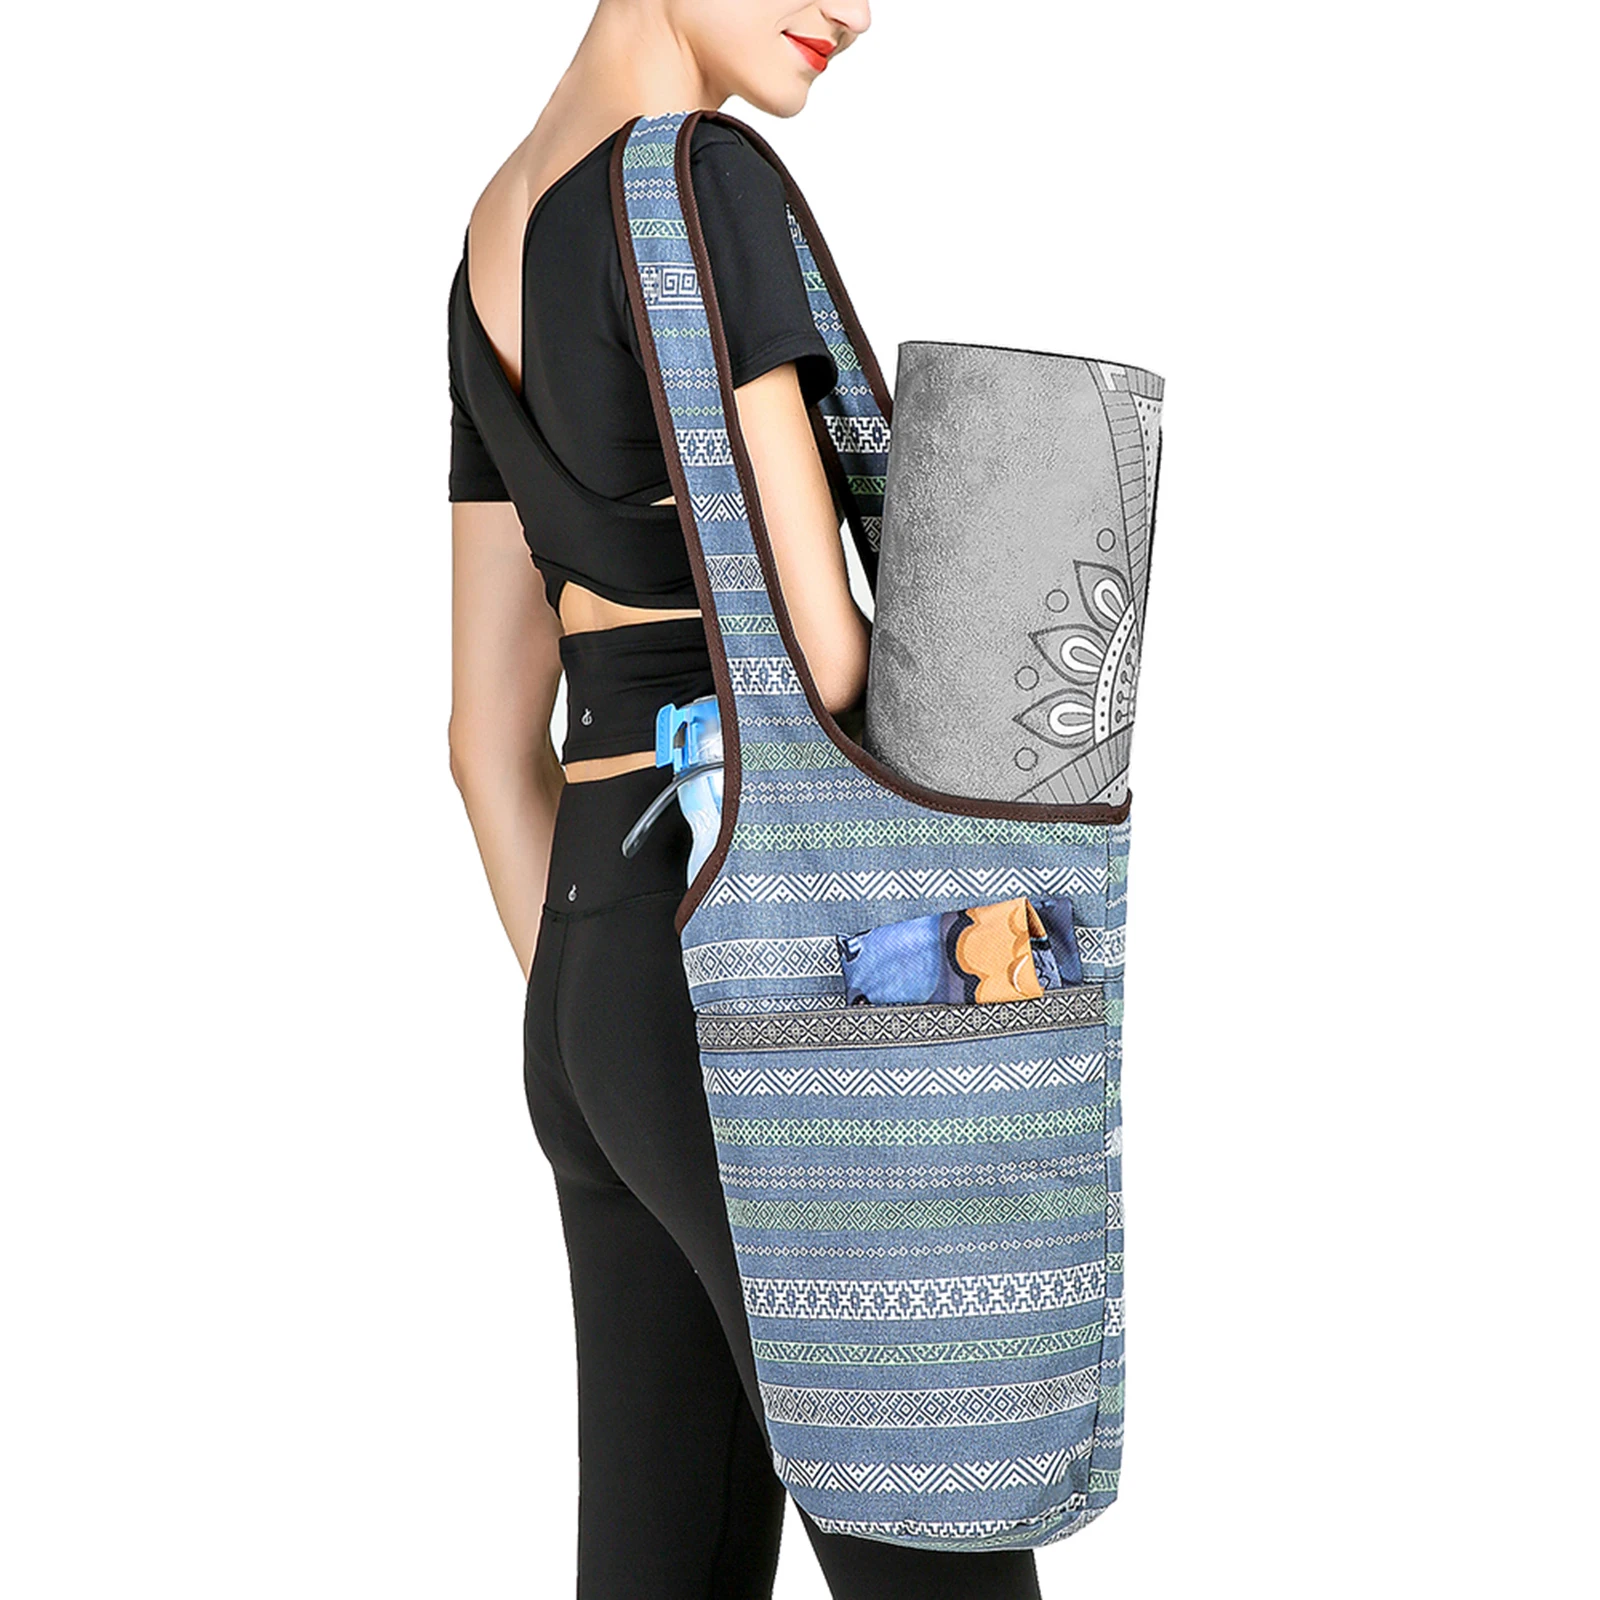 Zipper Pocket and Adjustable Shoulder Strap Fit Most Size Exercise Mats Vegou Yoga Mat Bag with Large Size Pocket